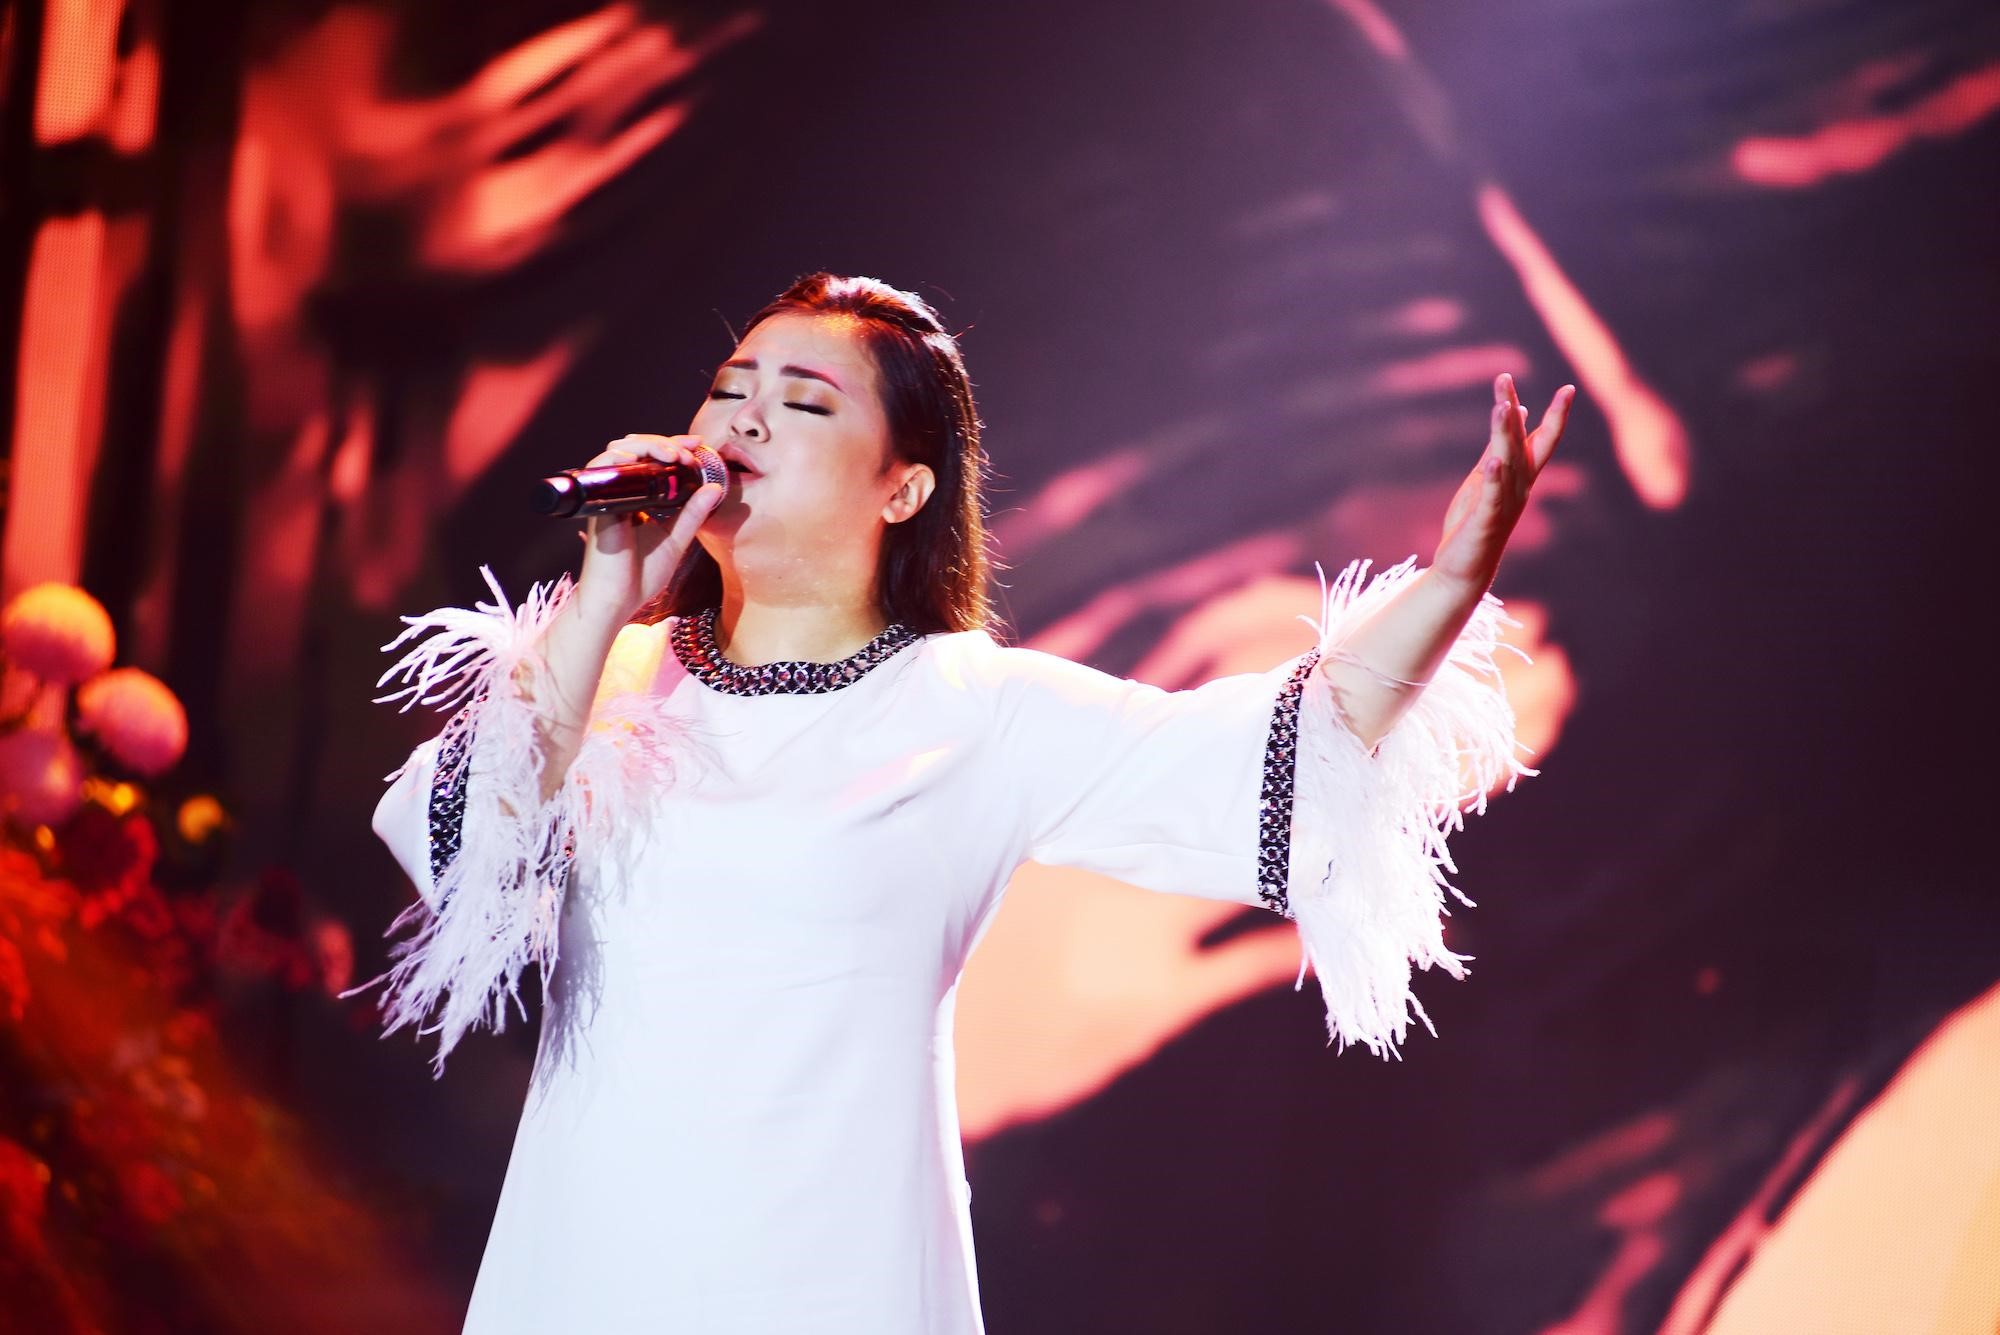 Kim Tuyến - tài năng âm nhạc trưởng thành từ hệ thống Nguyễn Hoàng cũng góp giọng với ca khúc “Mẹ tôi” - một sáng tác của nhạc sĩ Trần Tiến.